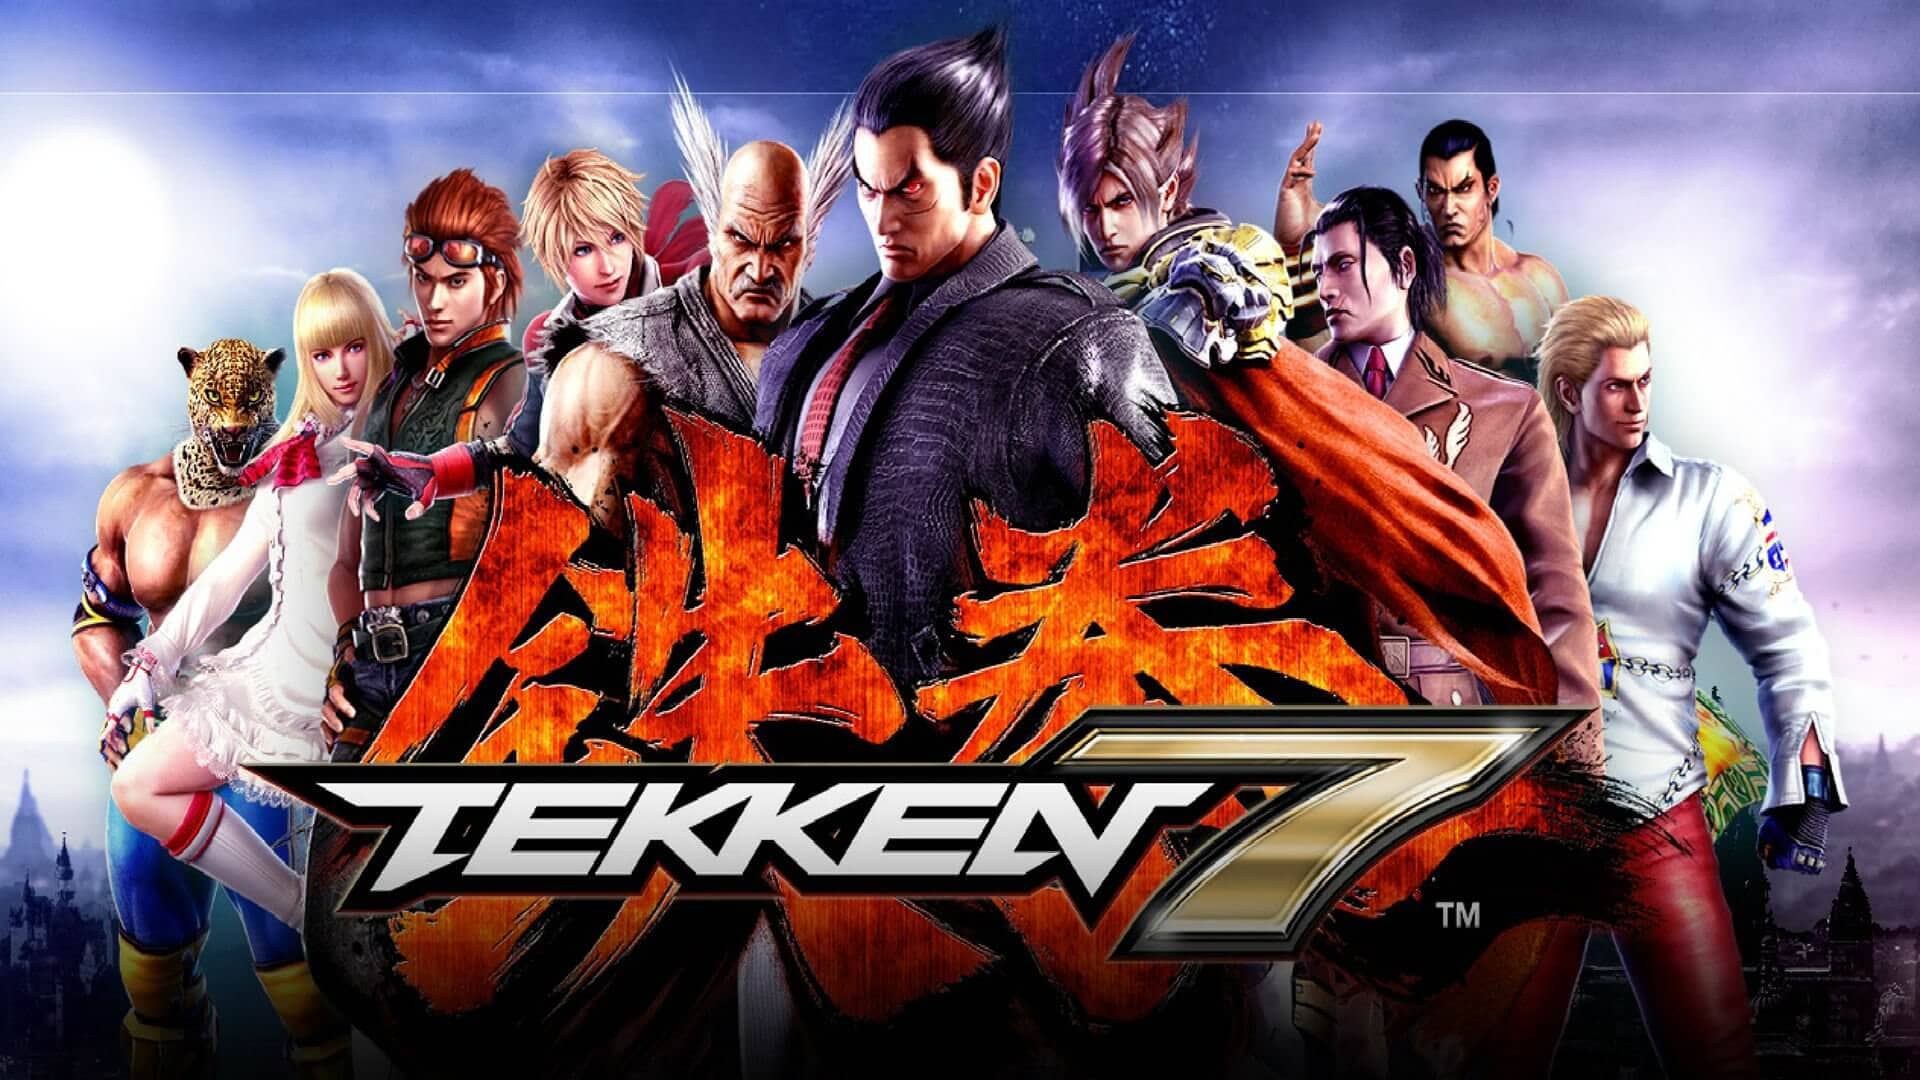 Liczba sprzedanych kopii Tekkena 7 przekroczyła 10 milionów